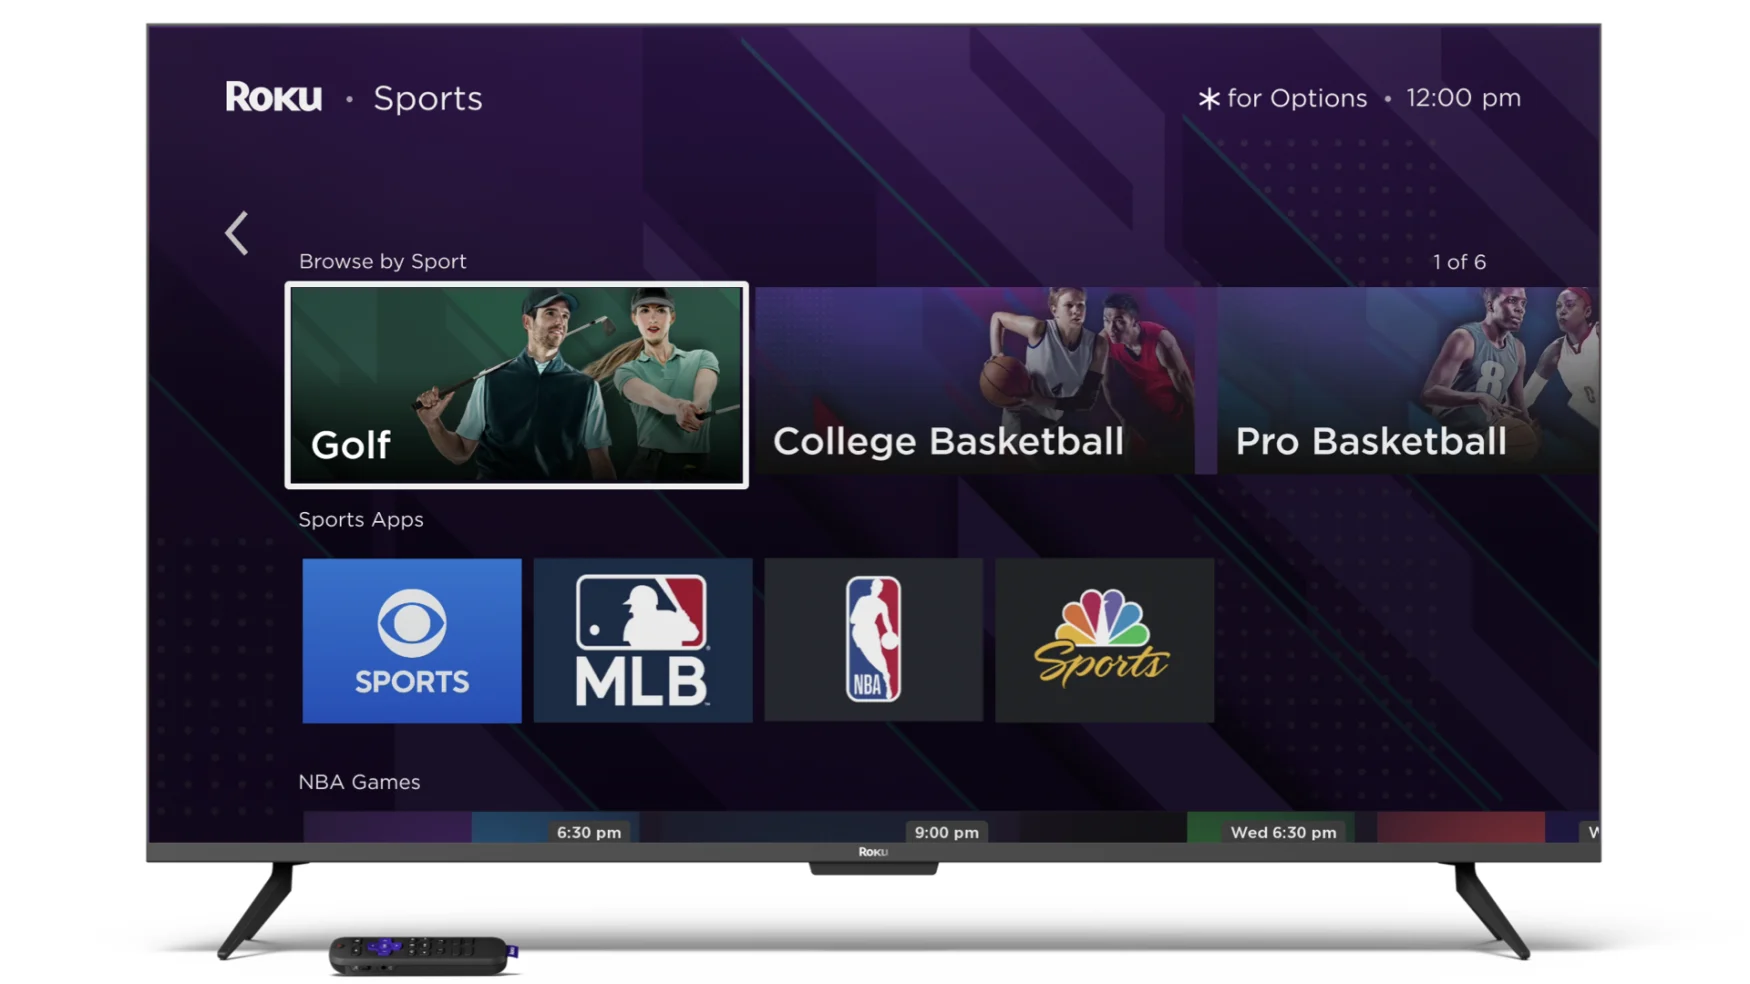 Рекламное изображение Roku, показывающее телевизор со спортивным меню.